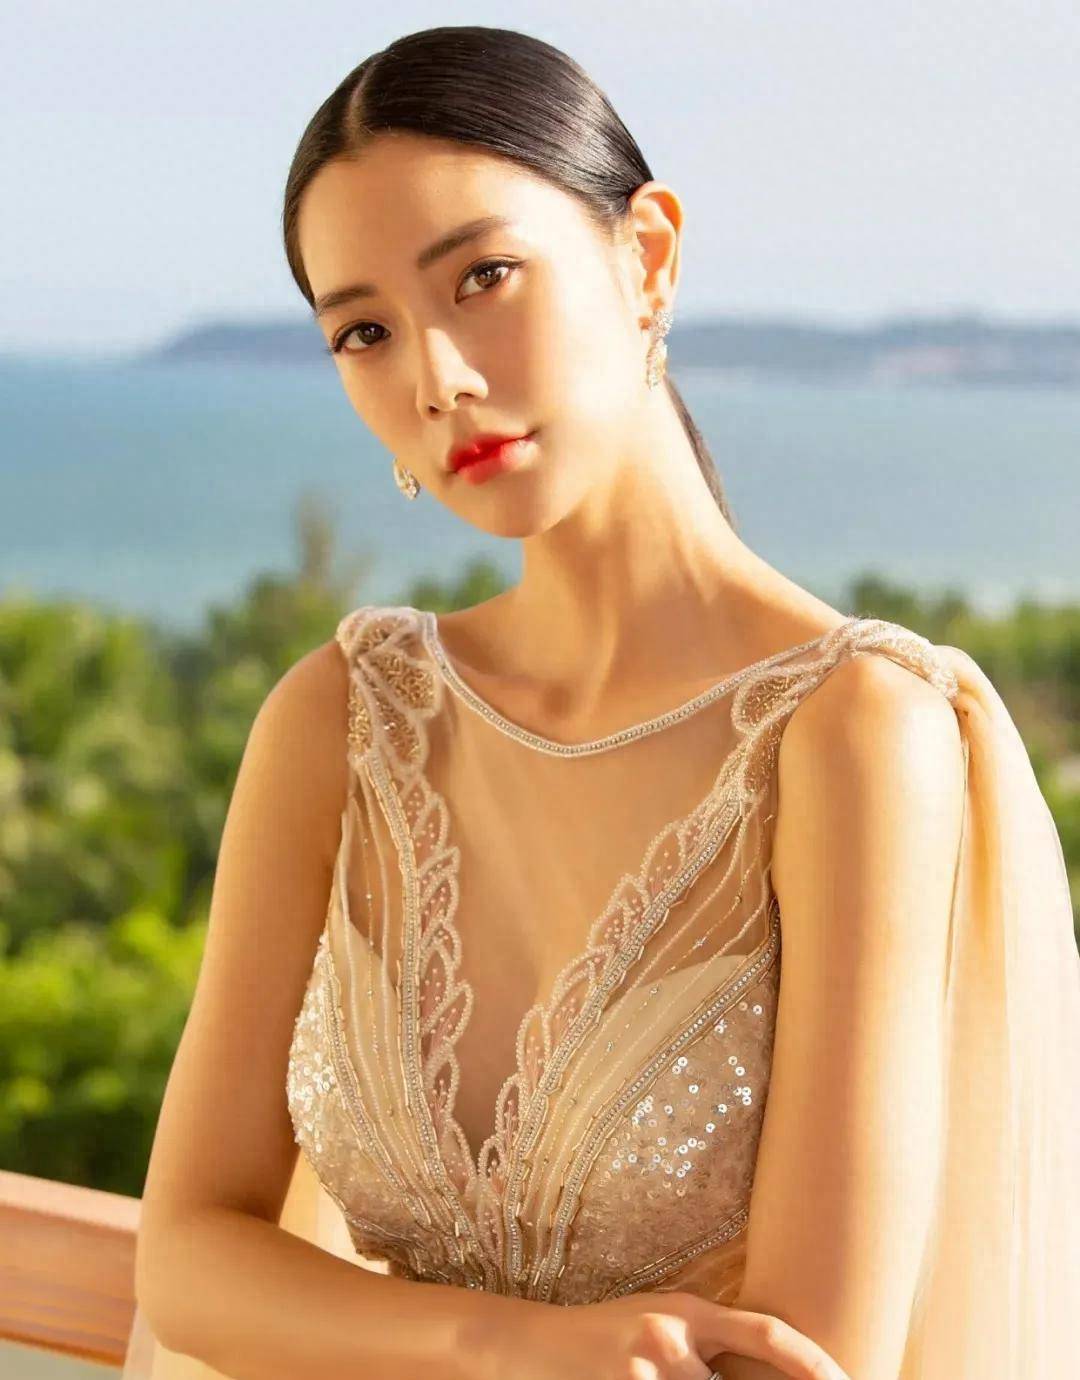 克拉拉不愧被称为亚洲第一美女,身穿镂空连衣裙,凹凸曲线明显,